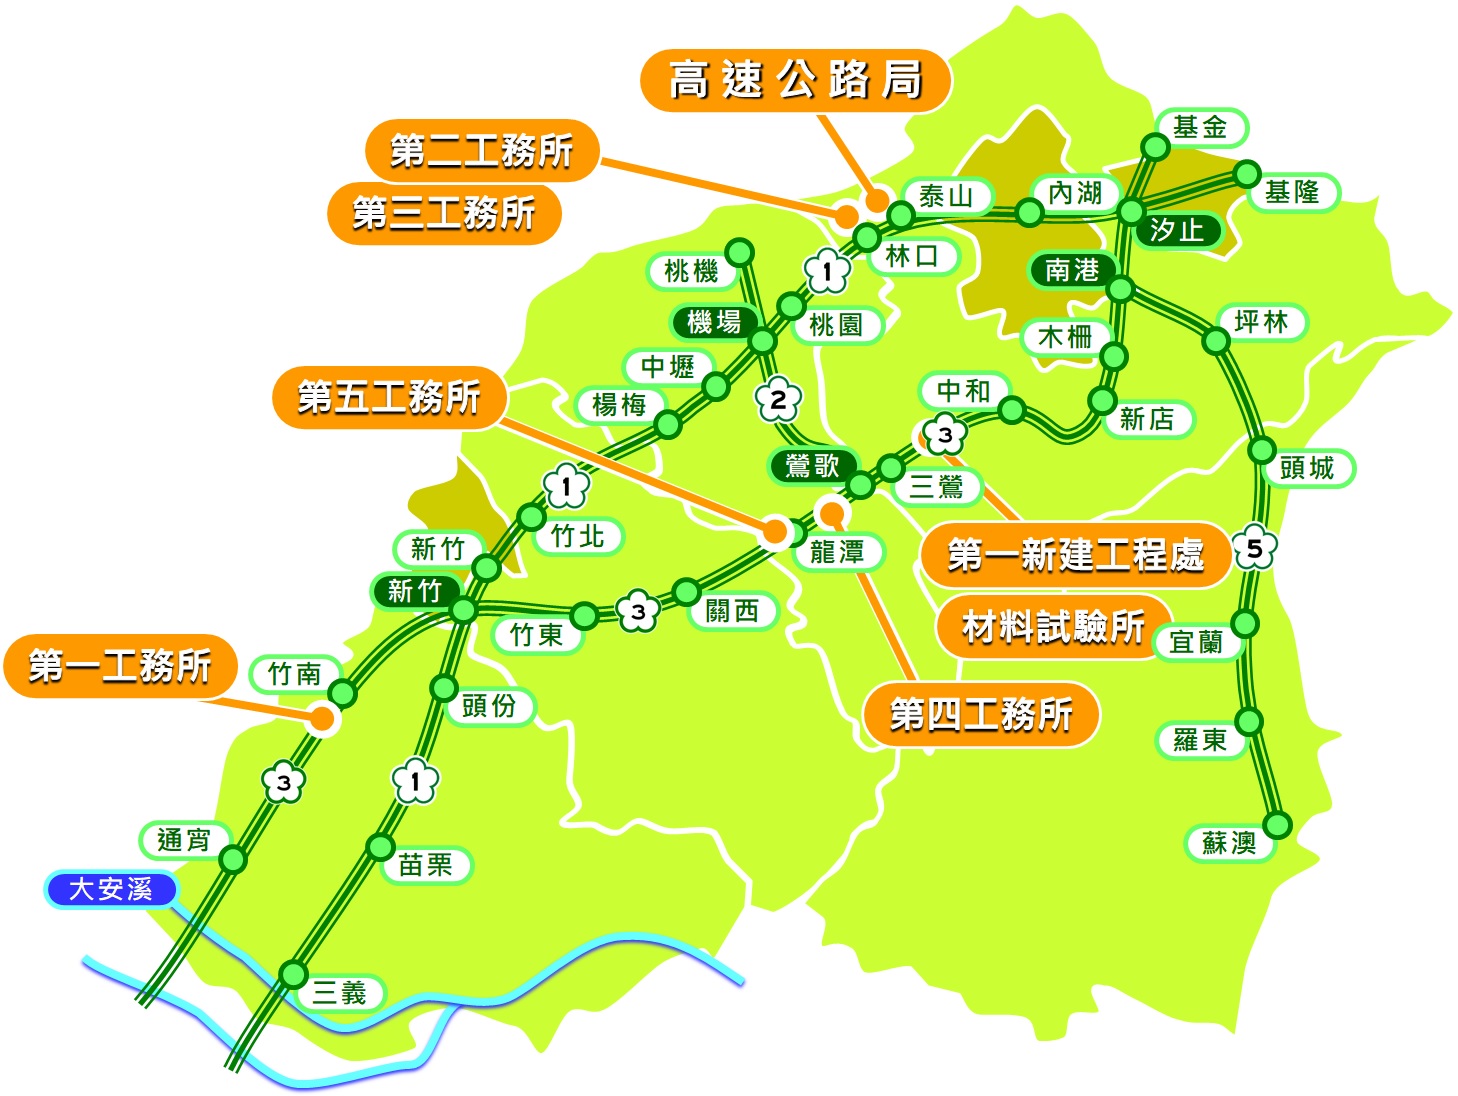 工程處轄區範圍：臺灣中、南部(大安溪以北)地區高速公路新建、拓建工程